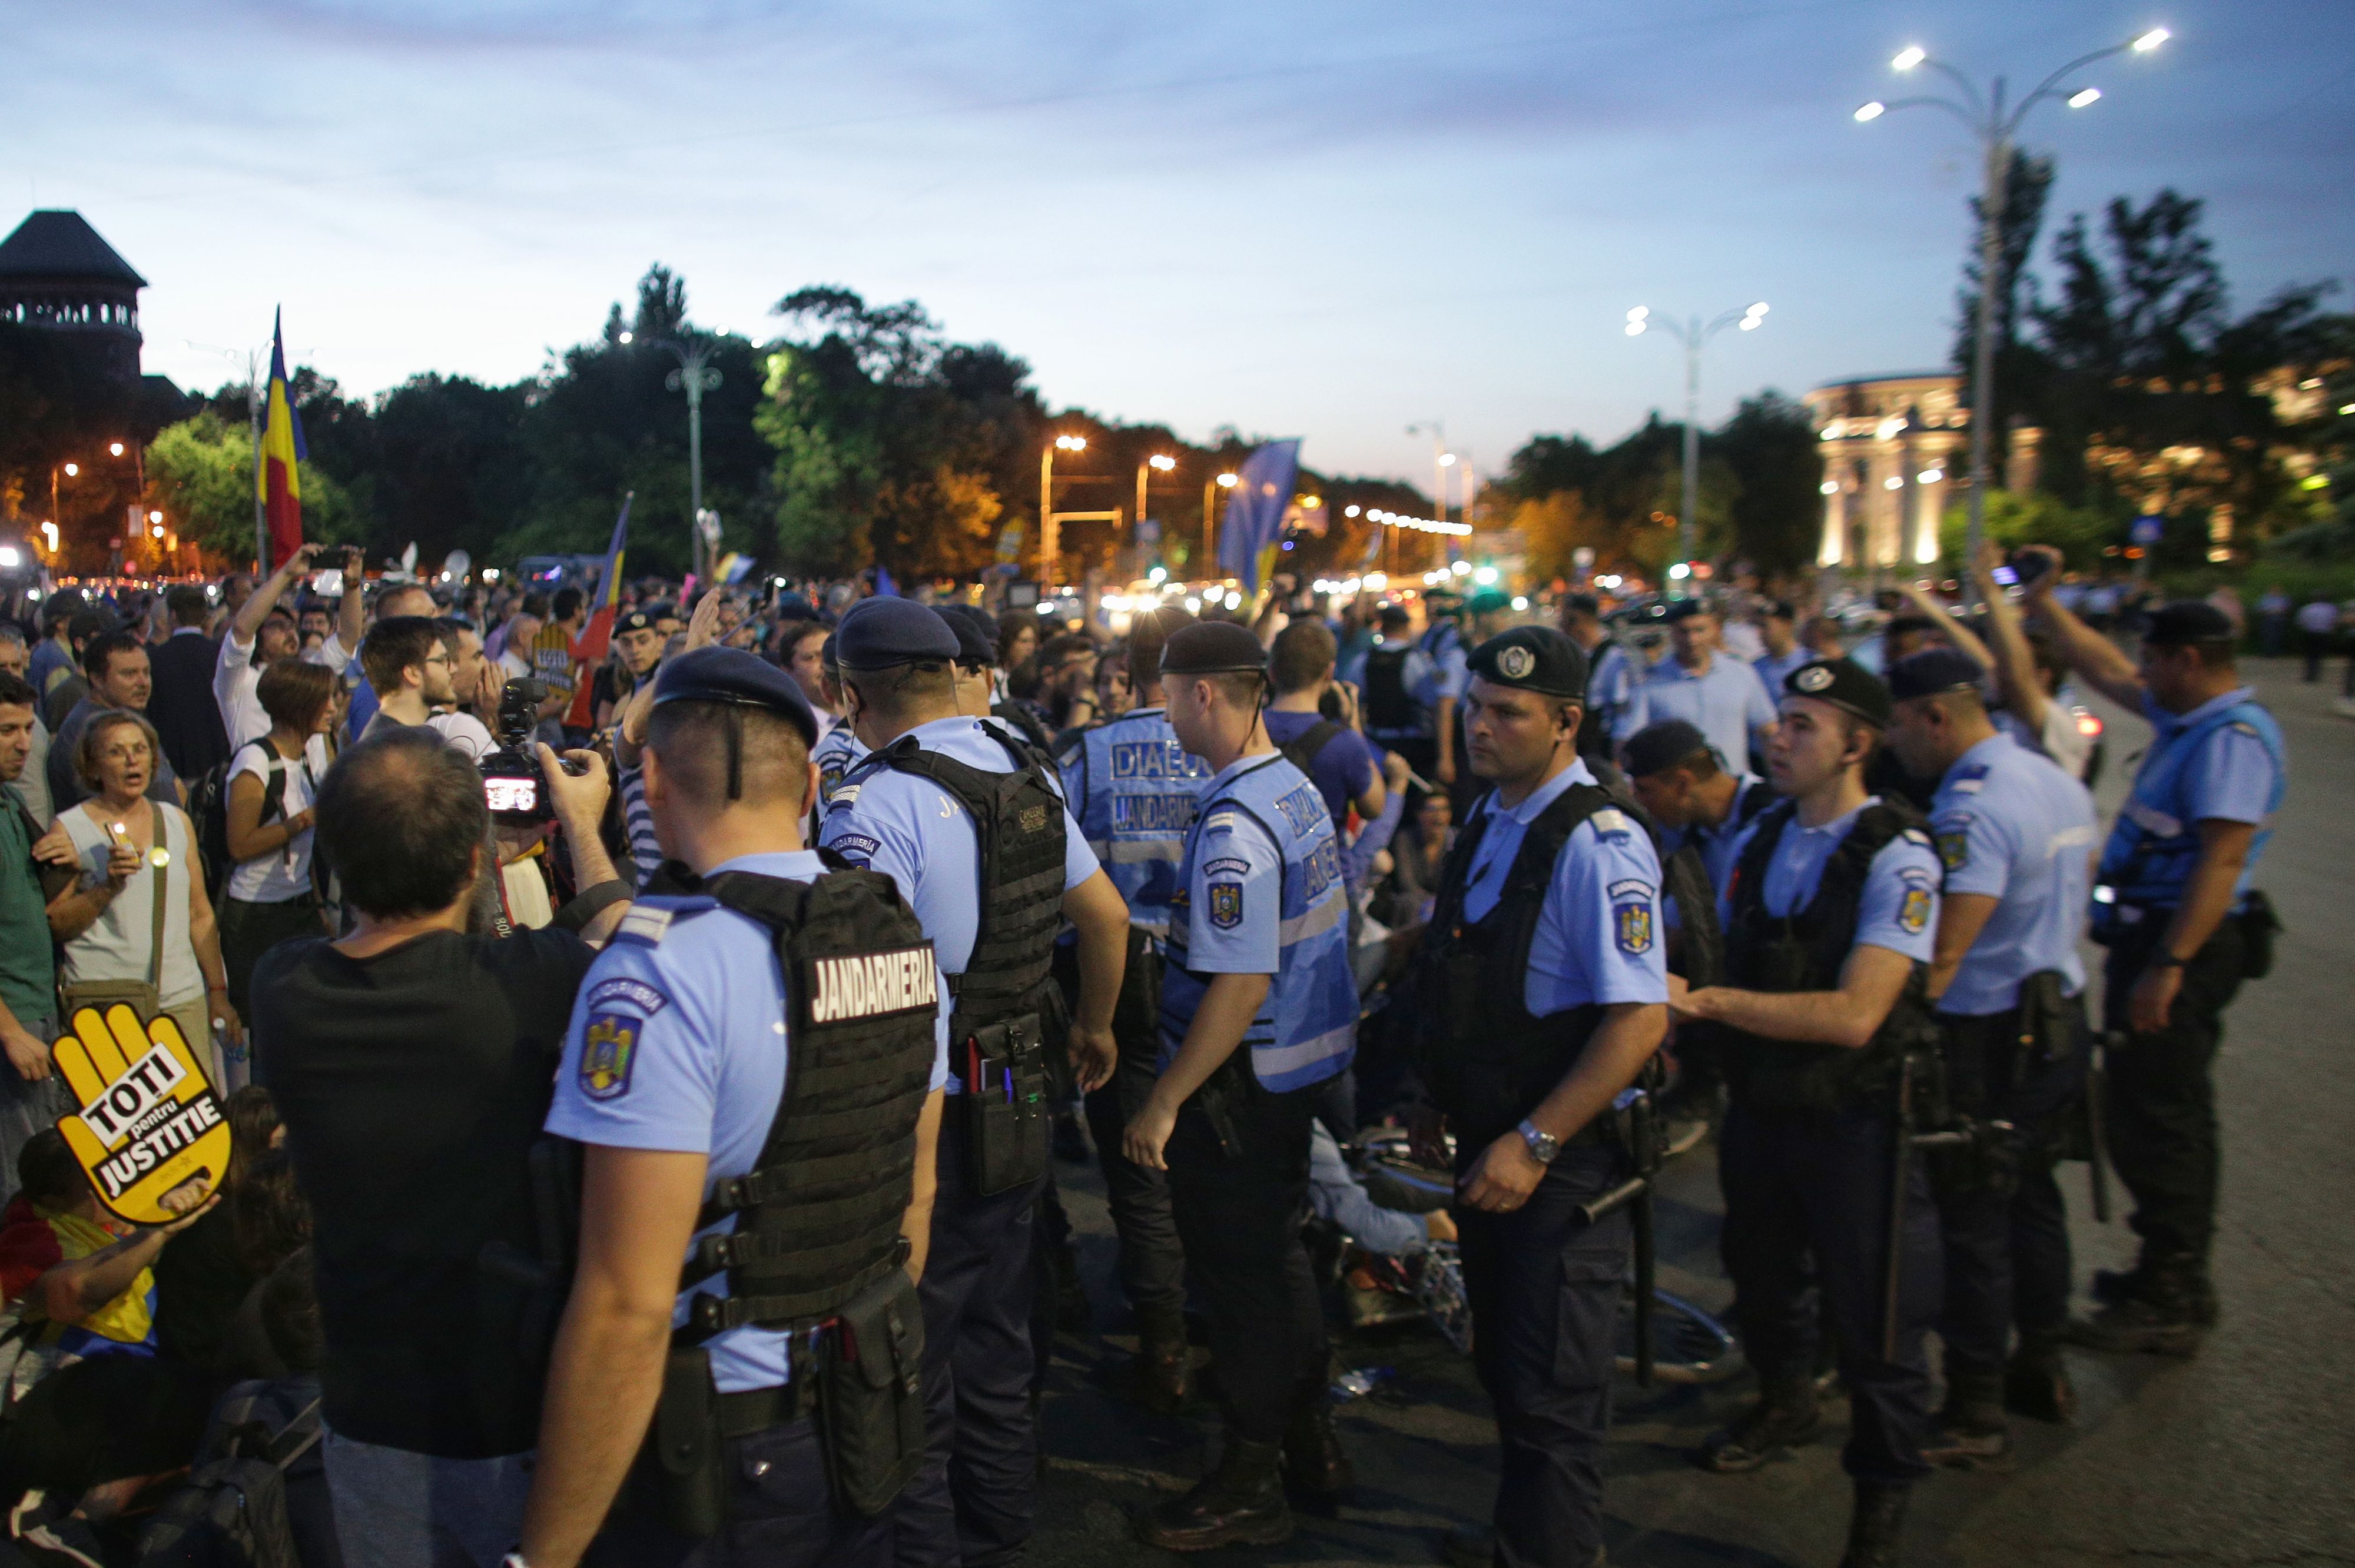 Jandarmerie: Protestul #rezist anunţat sâmbătă în Piaţa Victoriei nu are autorizaţie